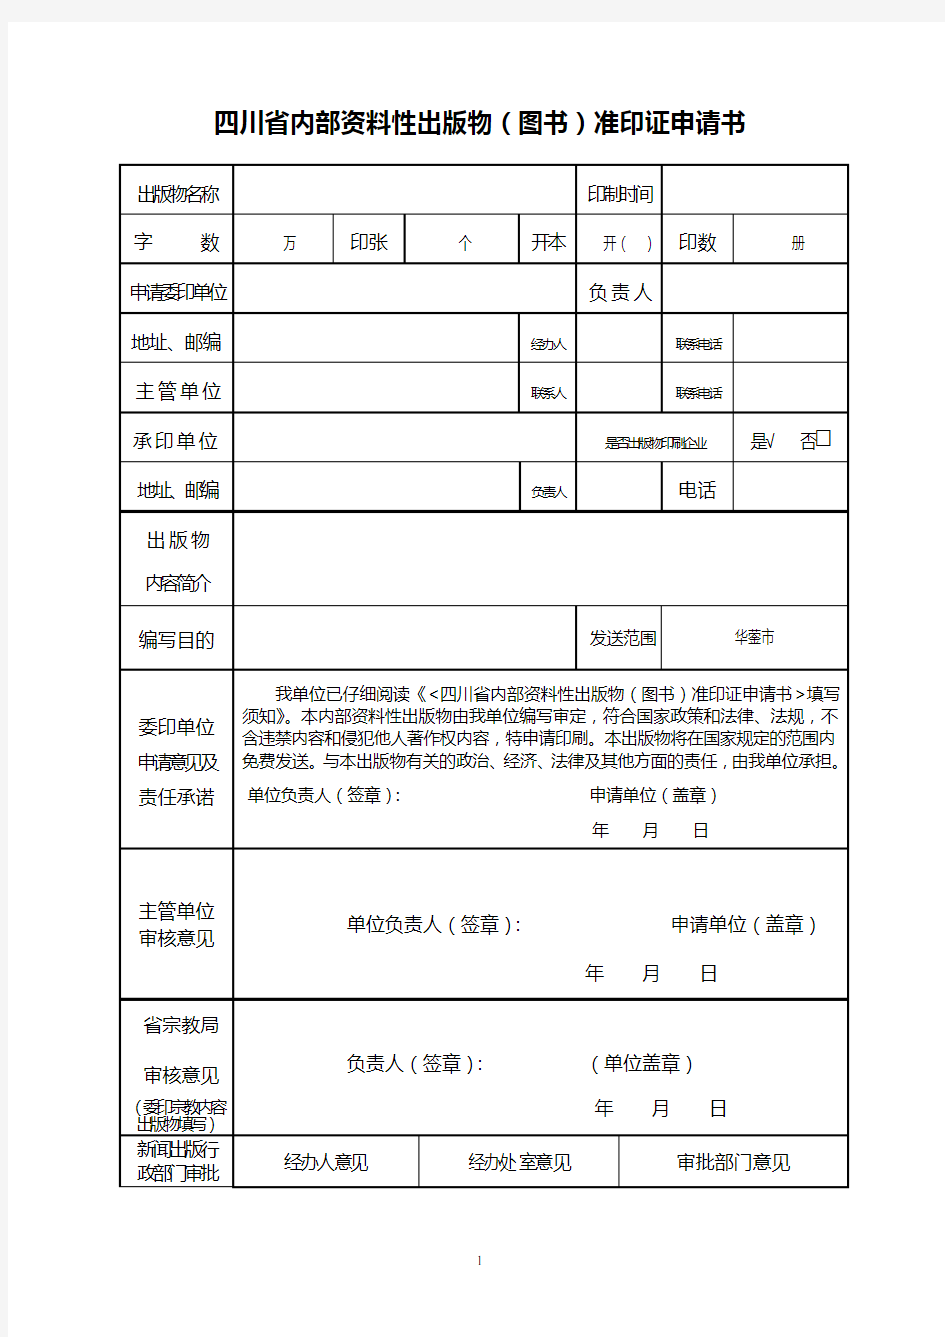 四川省内部资料性出版物(图书)准印证申请书